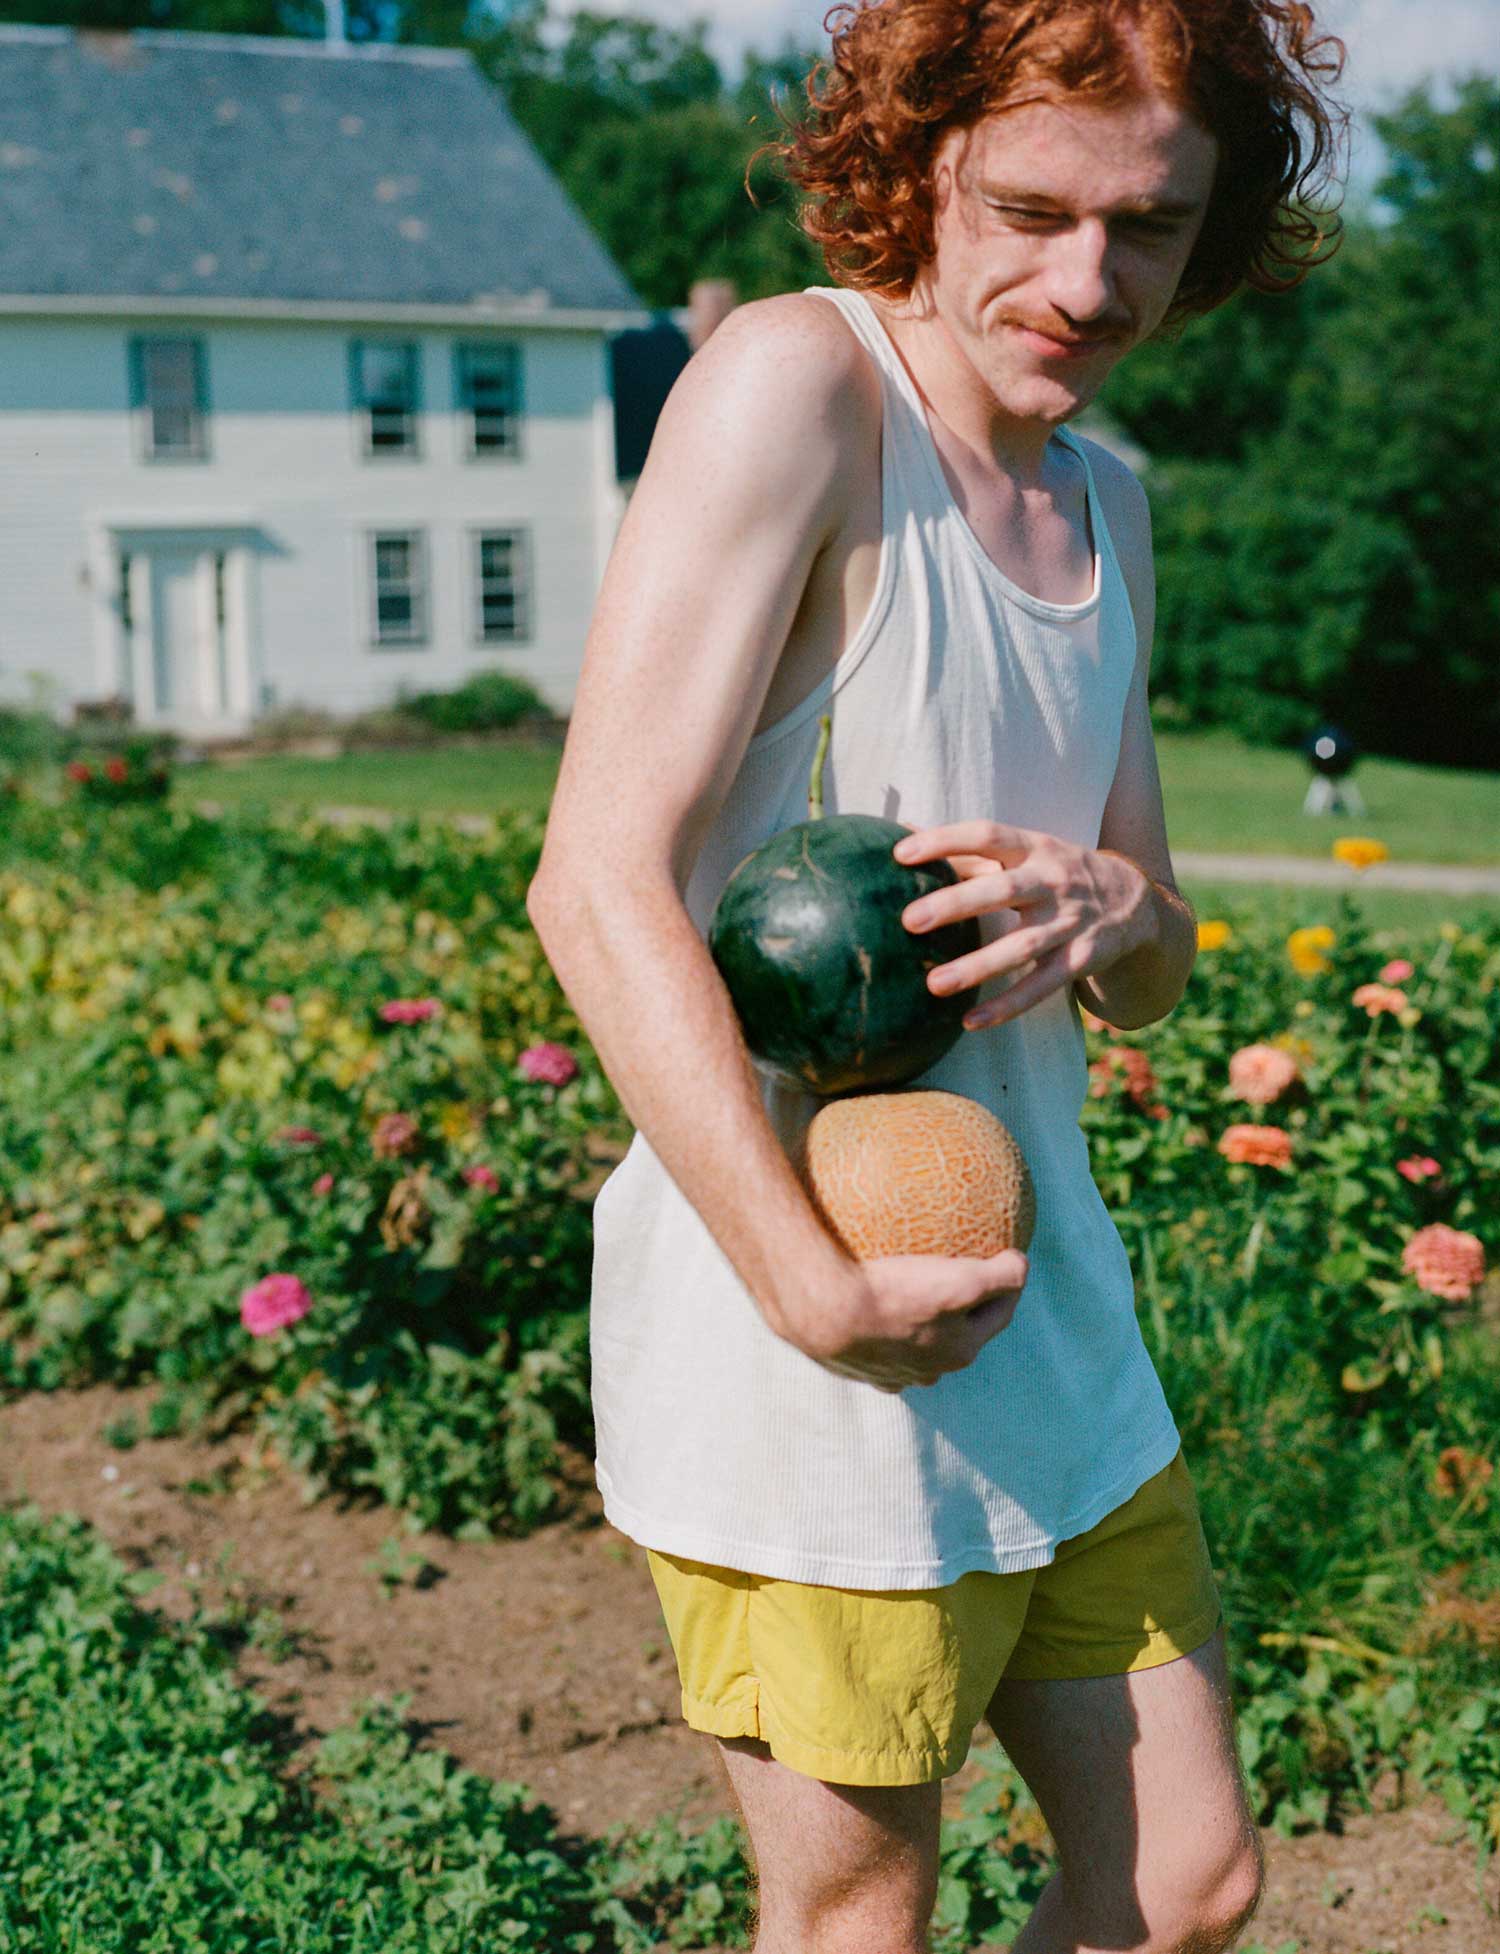 A person walks through a garden holding two melons.